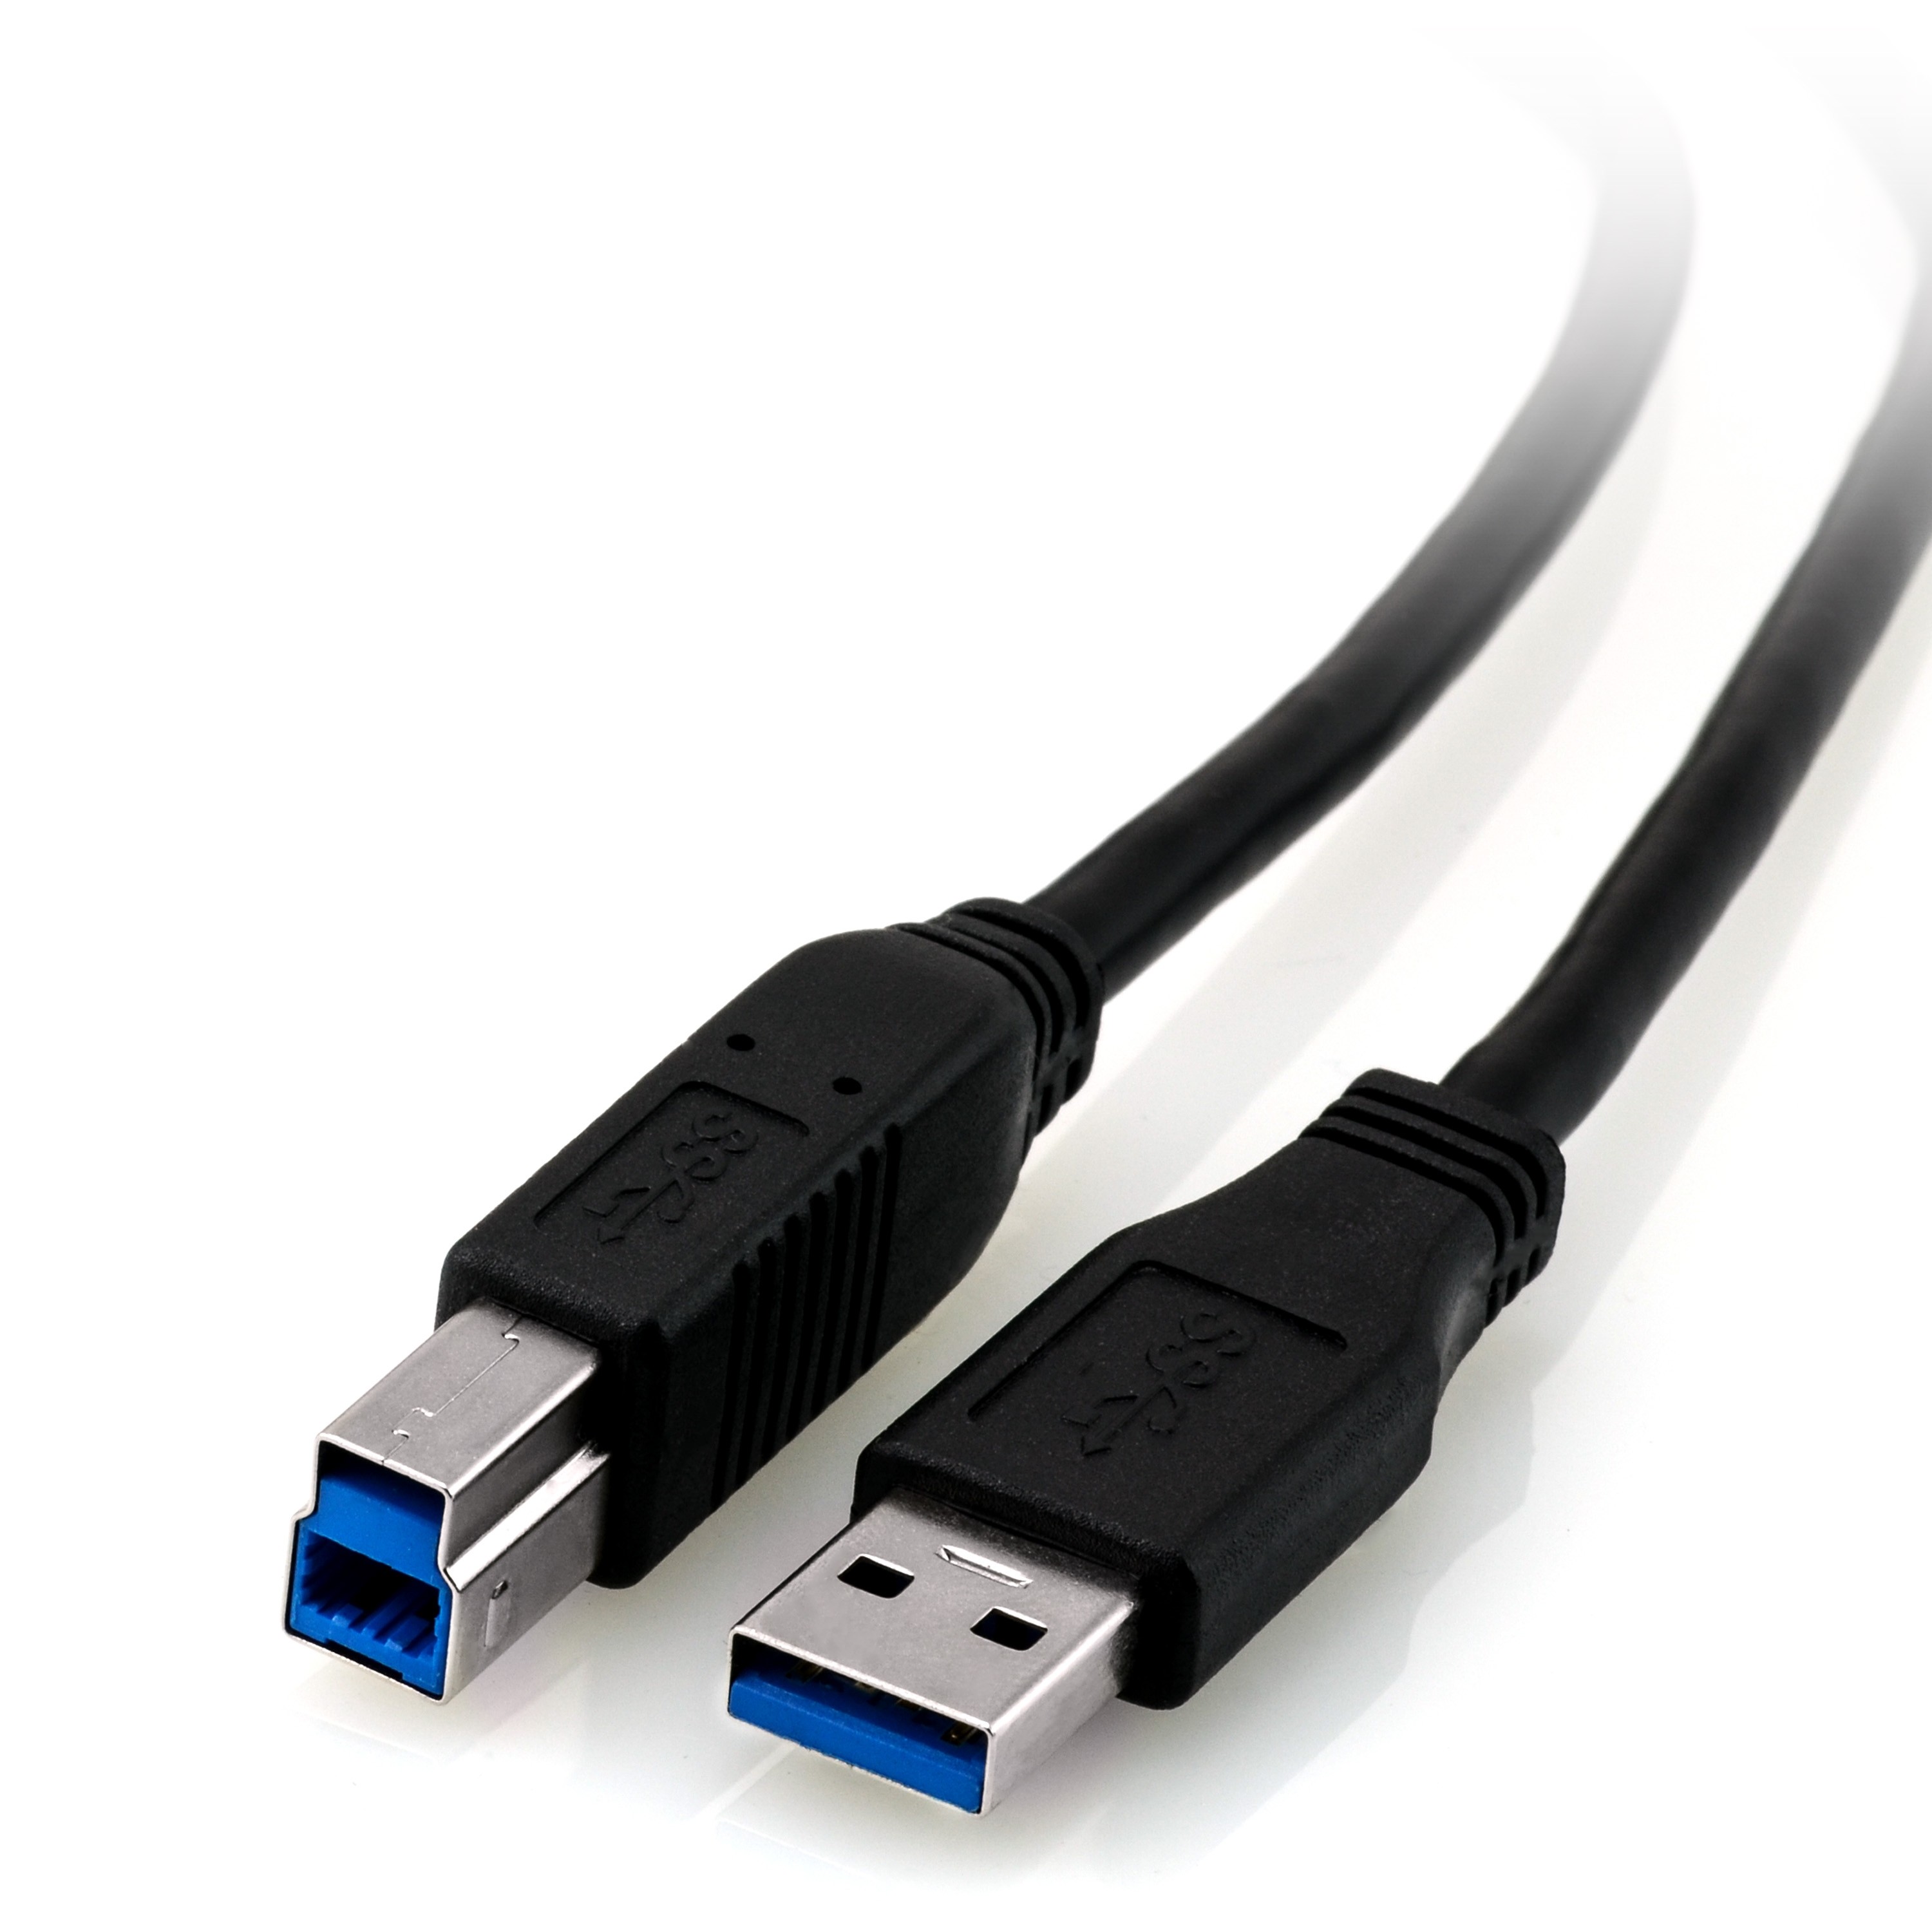 Pinpoint stege Ære CSL Computer | USB 3.0 Kabel 1,0m, USB B Stecker auf USB A Stecker, schwarz